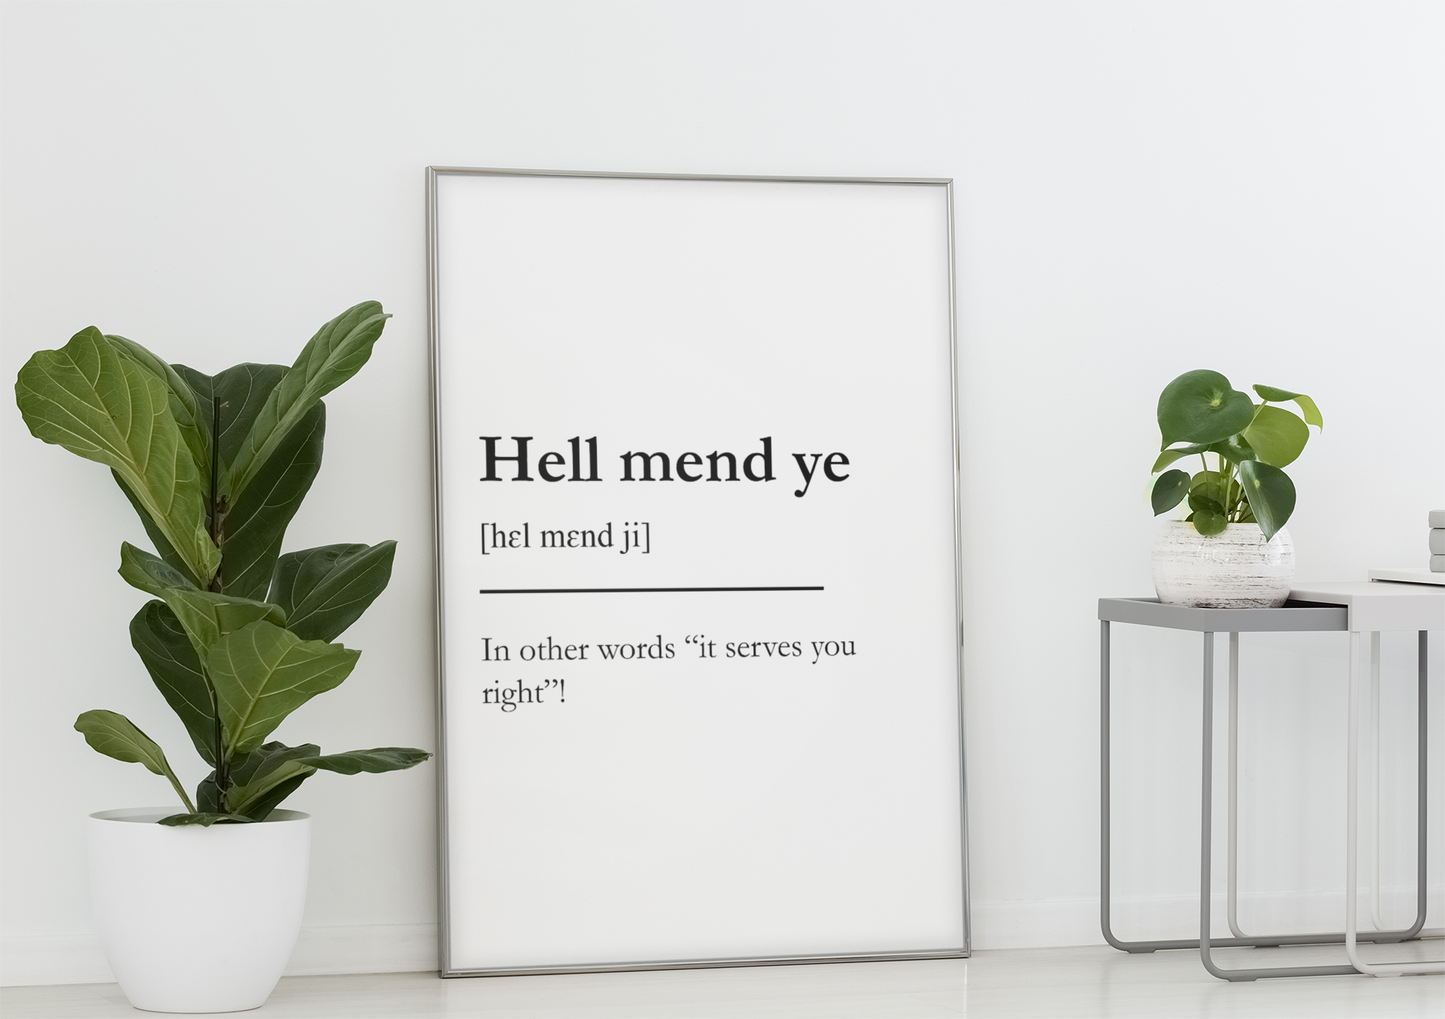 "Hell mend ye" - Scottish Slang